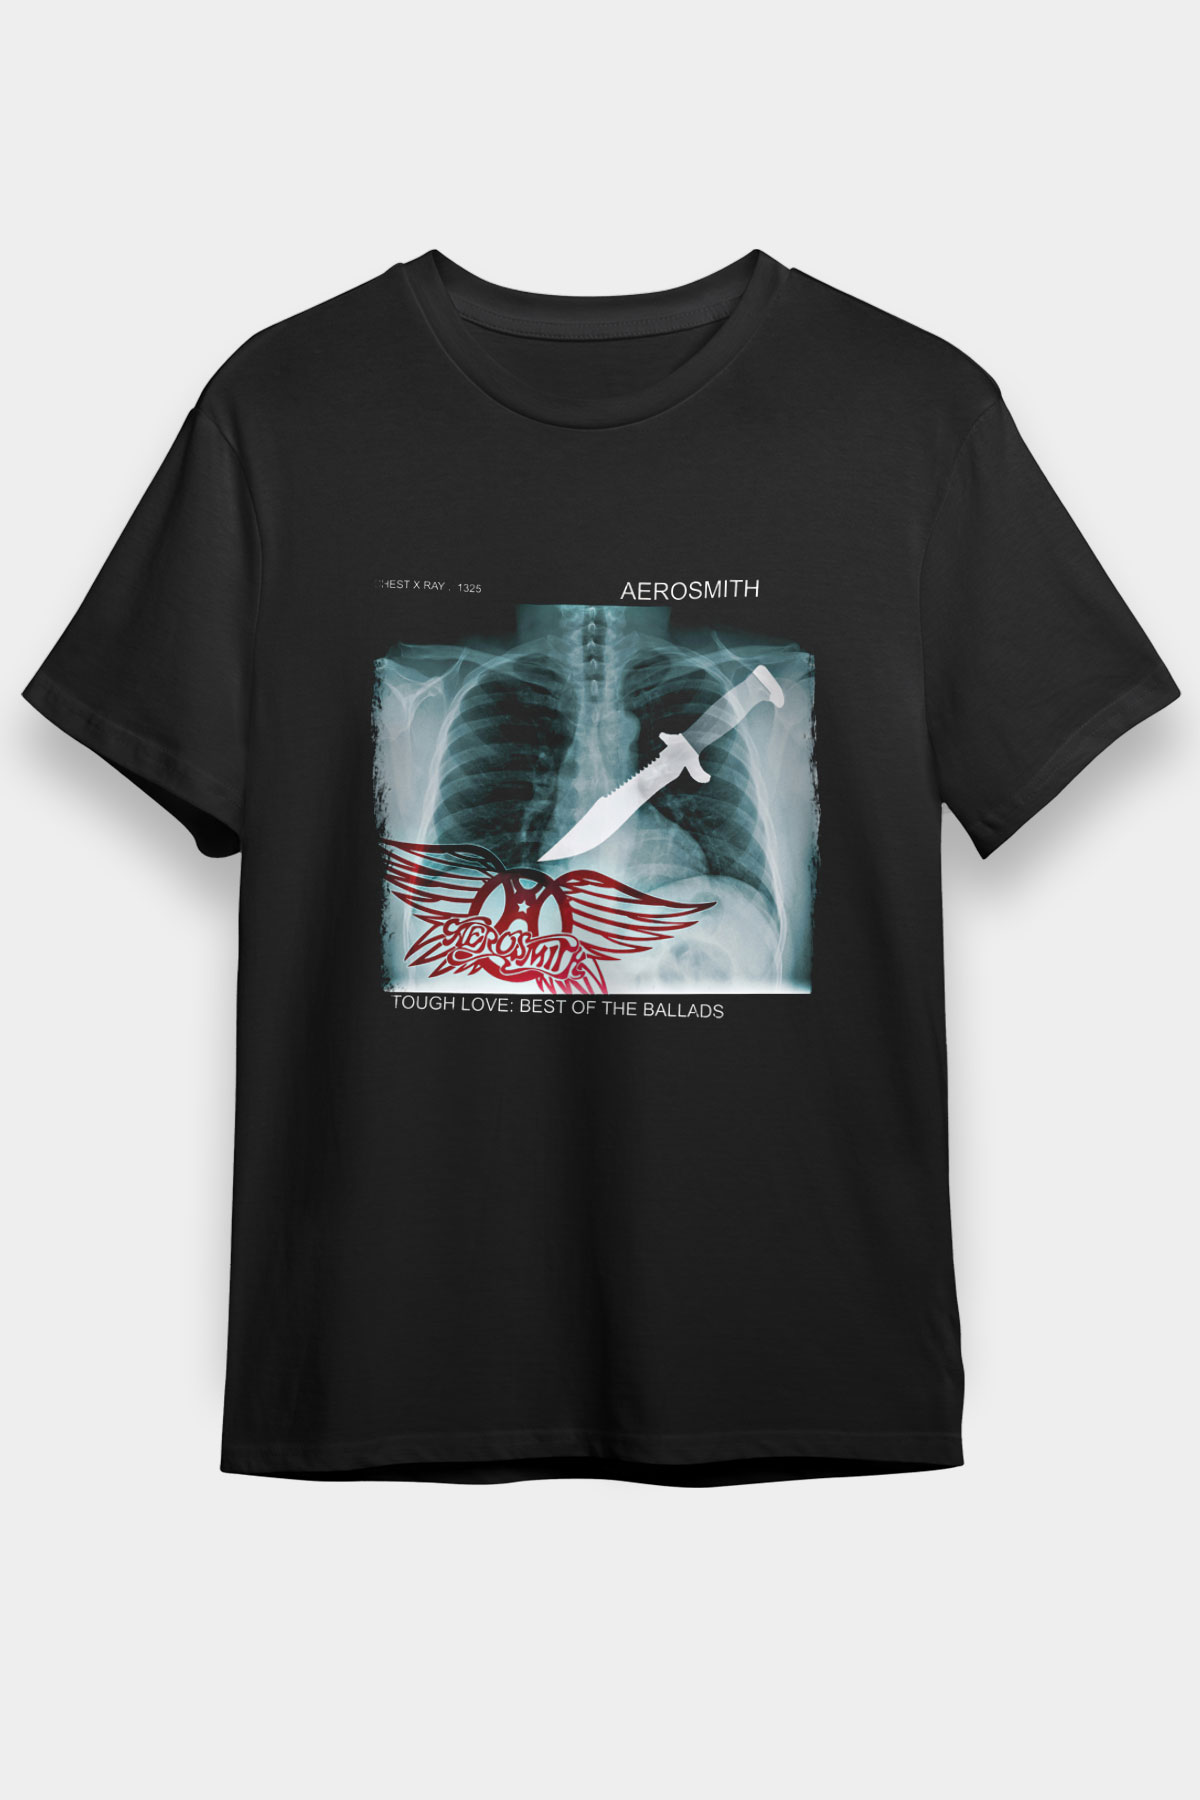 Aerosmith , Music Band ,Unisex Tshirt 21